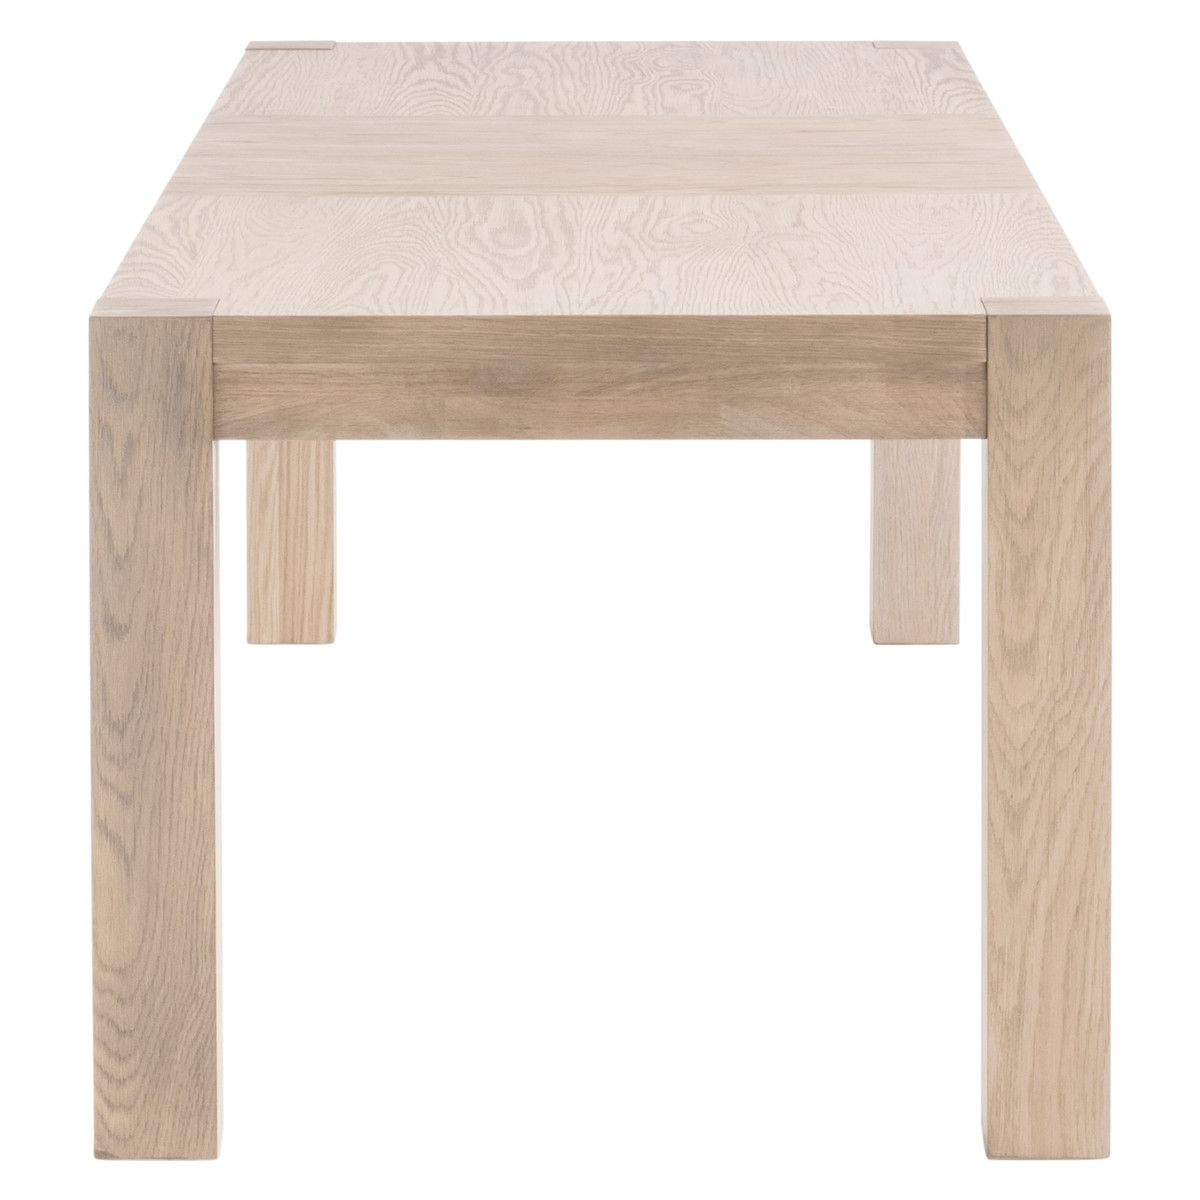 Adler Extension Dining Table /Light Honey Oak - Image 6